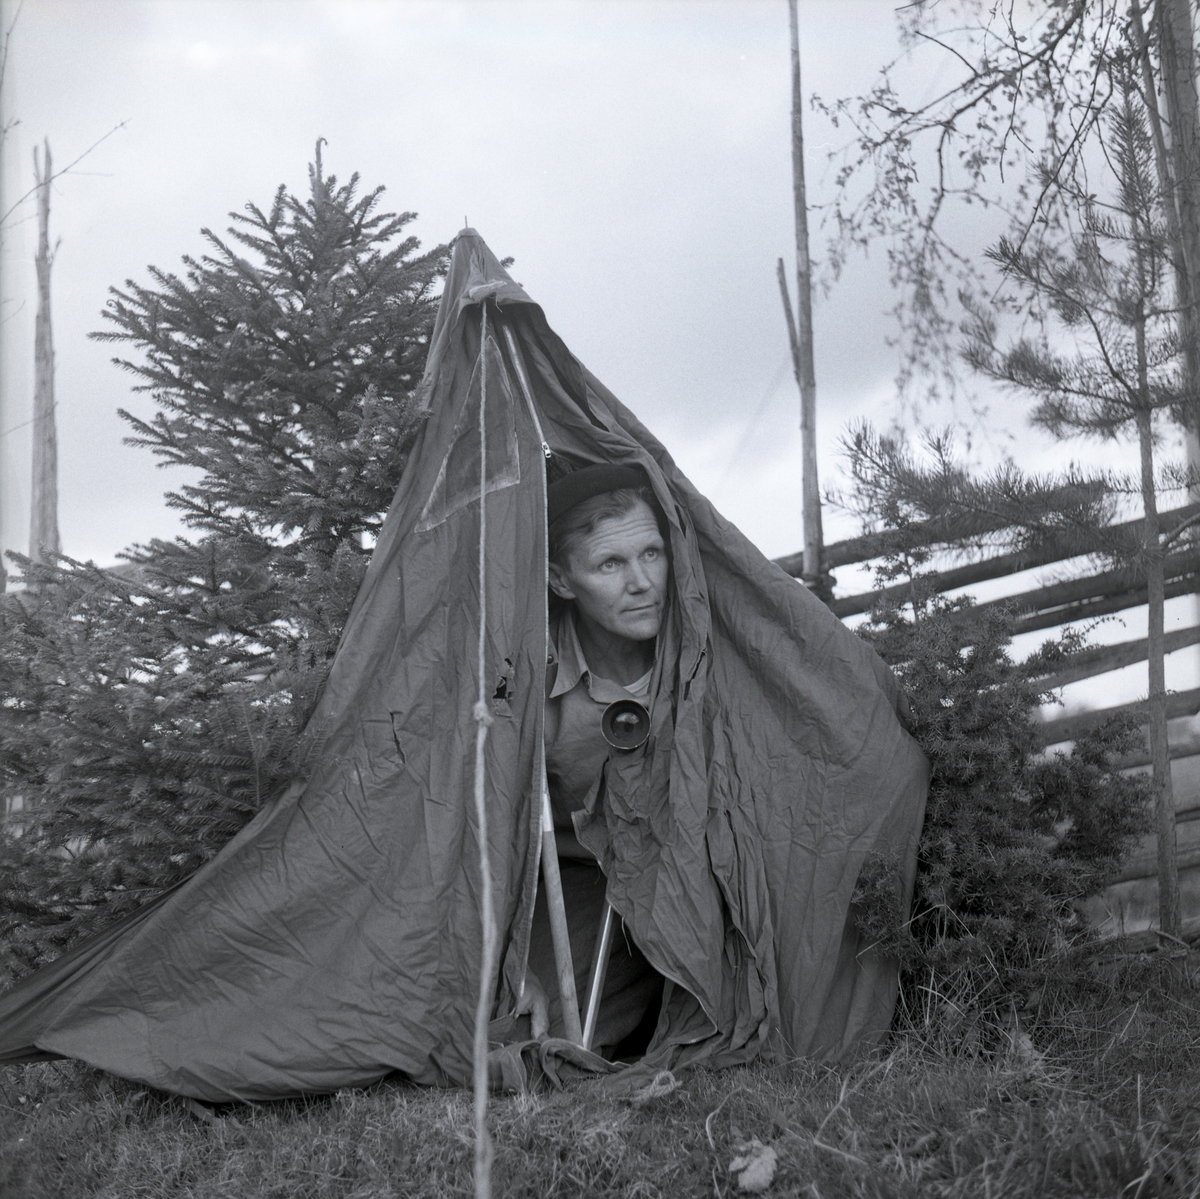 Hilding sitter i ett tältgömsle med en kamera i handen. Bakom tältet finns en gärdesgård och en gran, maj 1963.